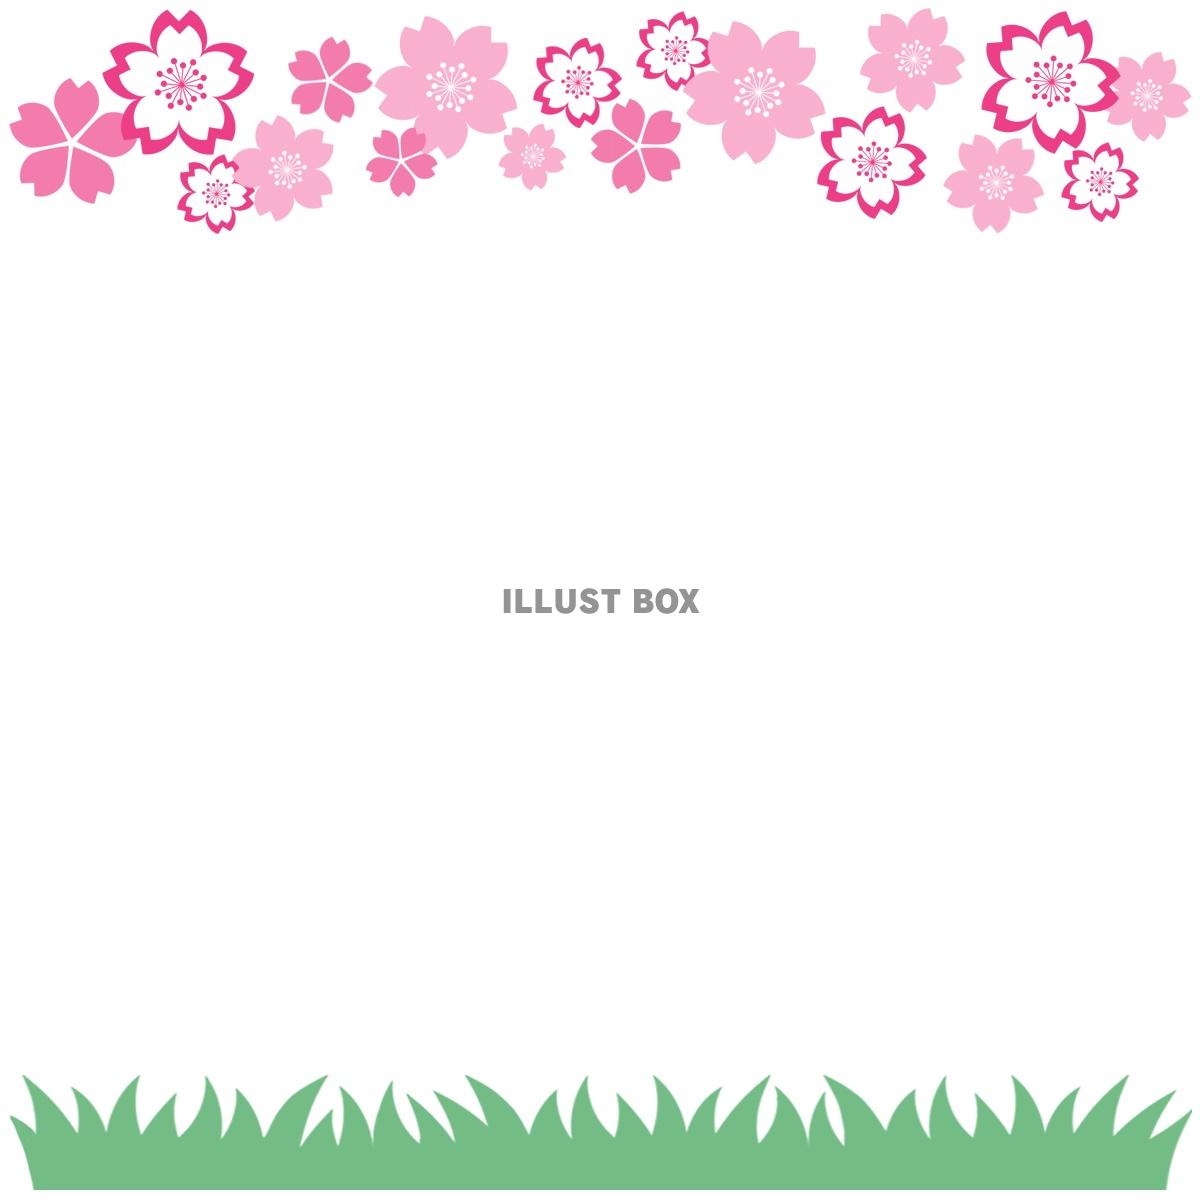 桜の花模様フレーム画像シンプル飾り枠素材イラスト